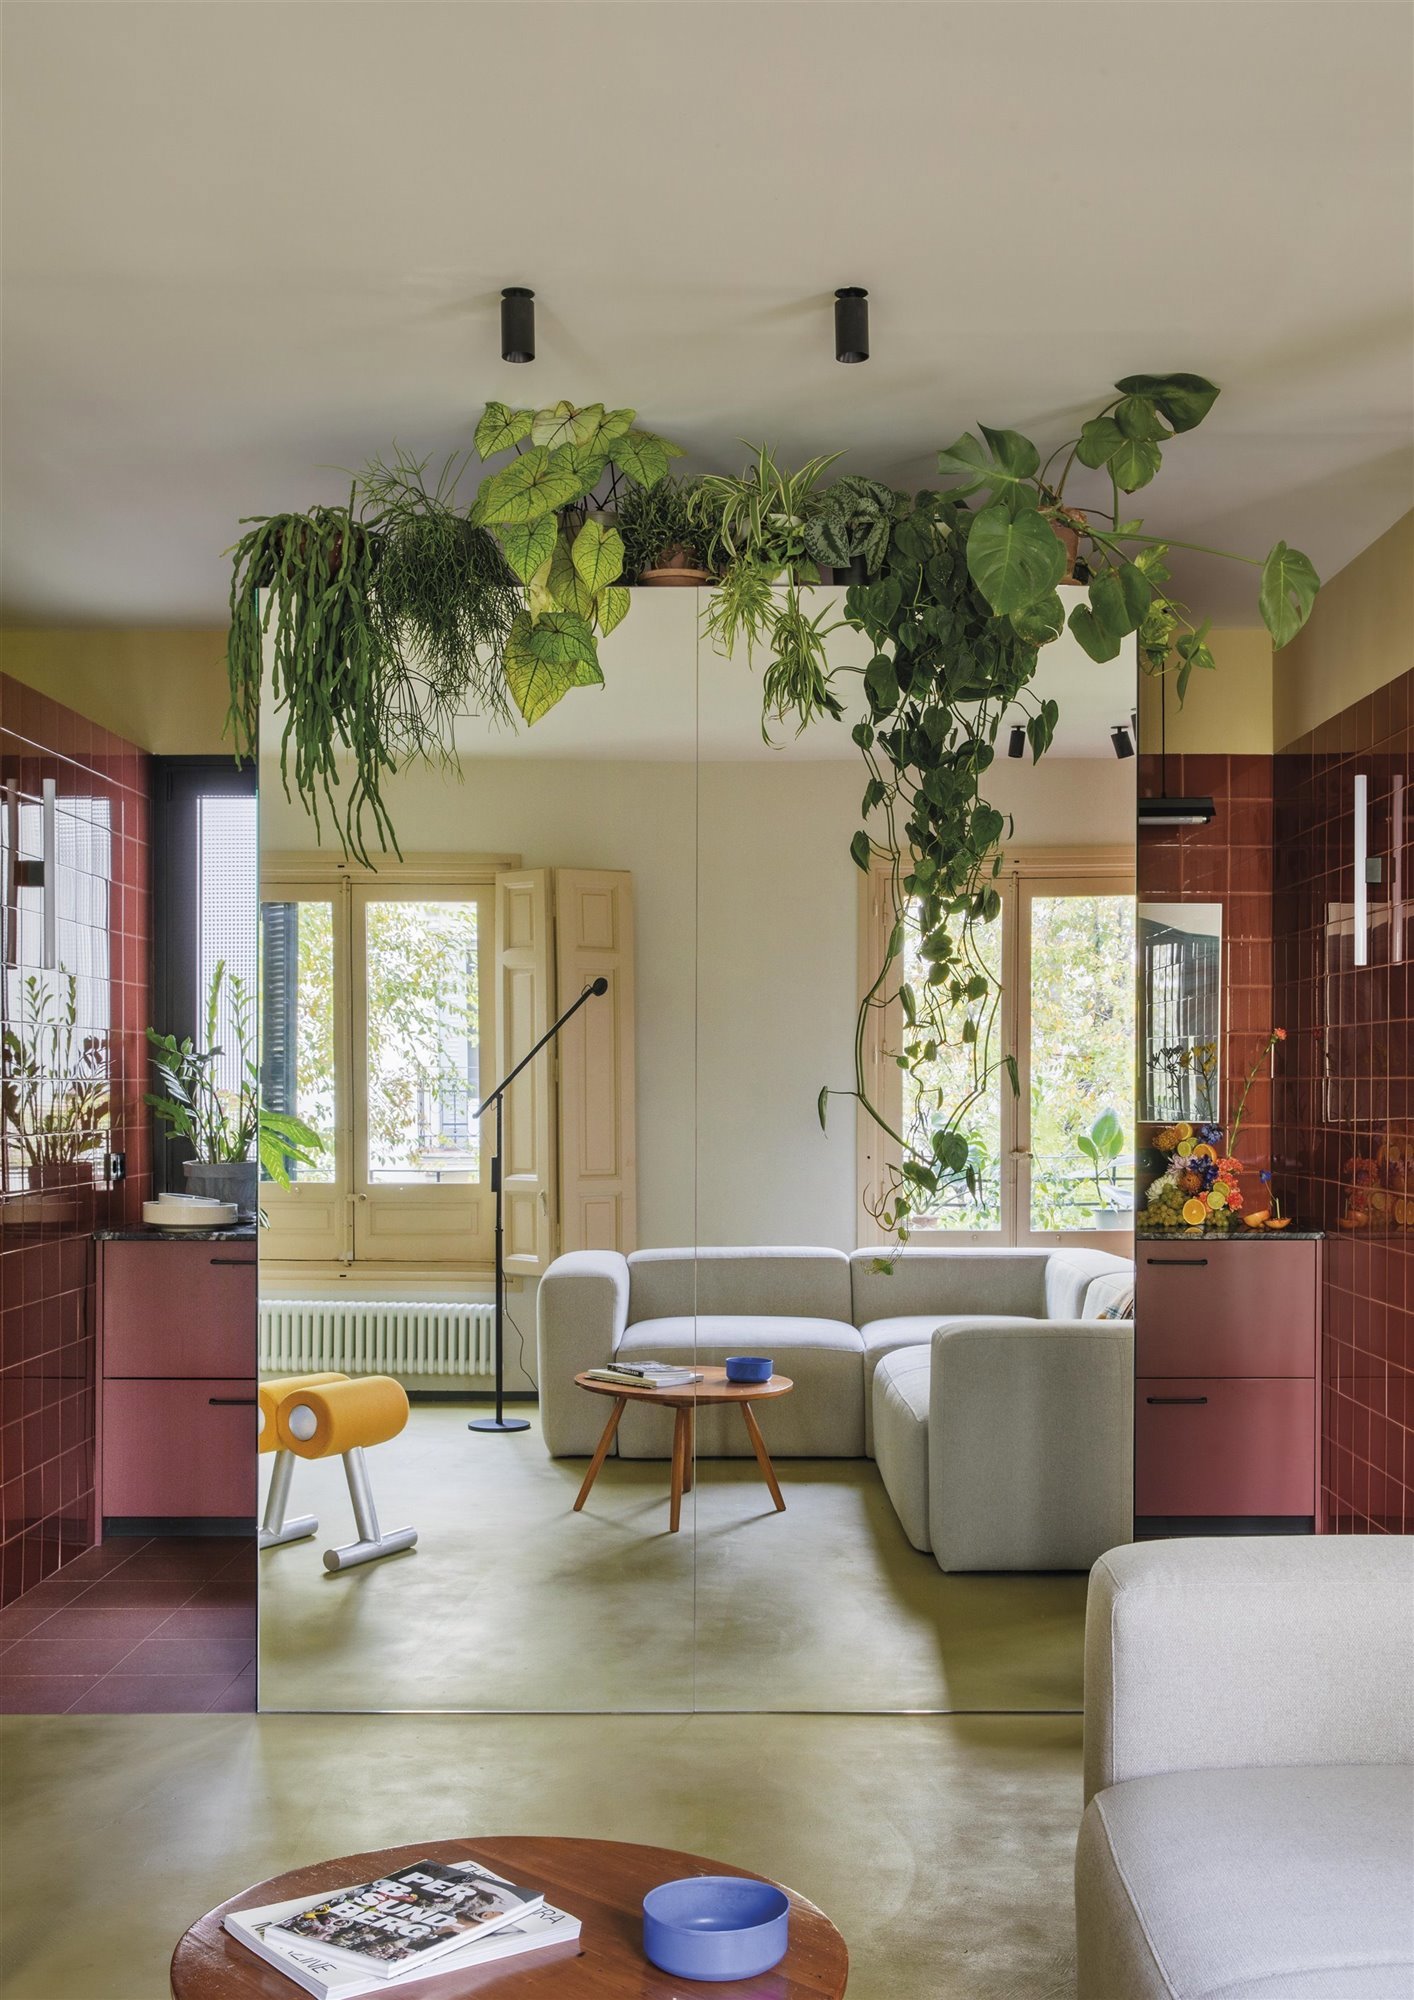 La cocina de este piso, diseñado por Estudio Reciente, se 'oculta' del salón con un espejo decorado con plantas.